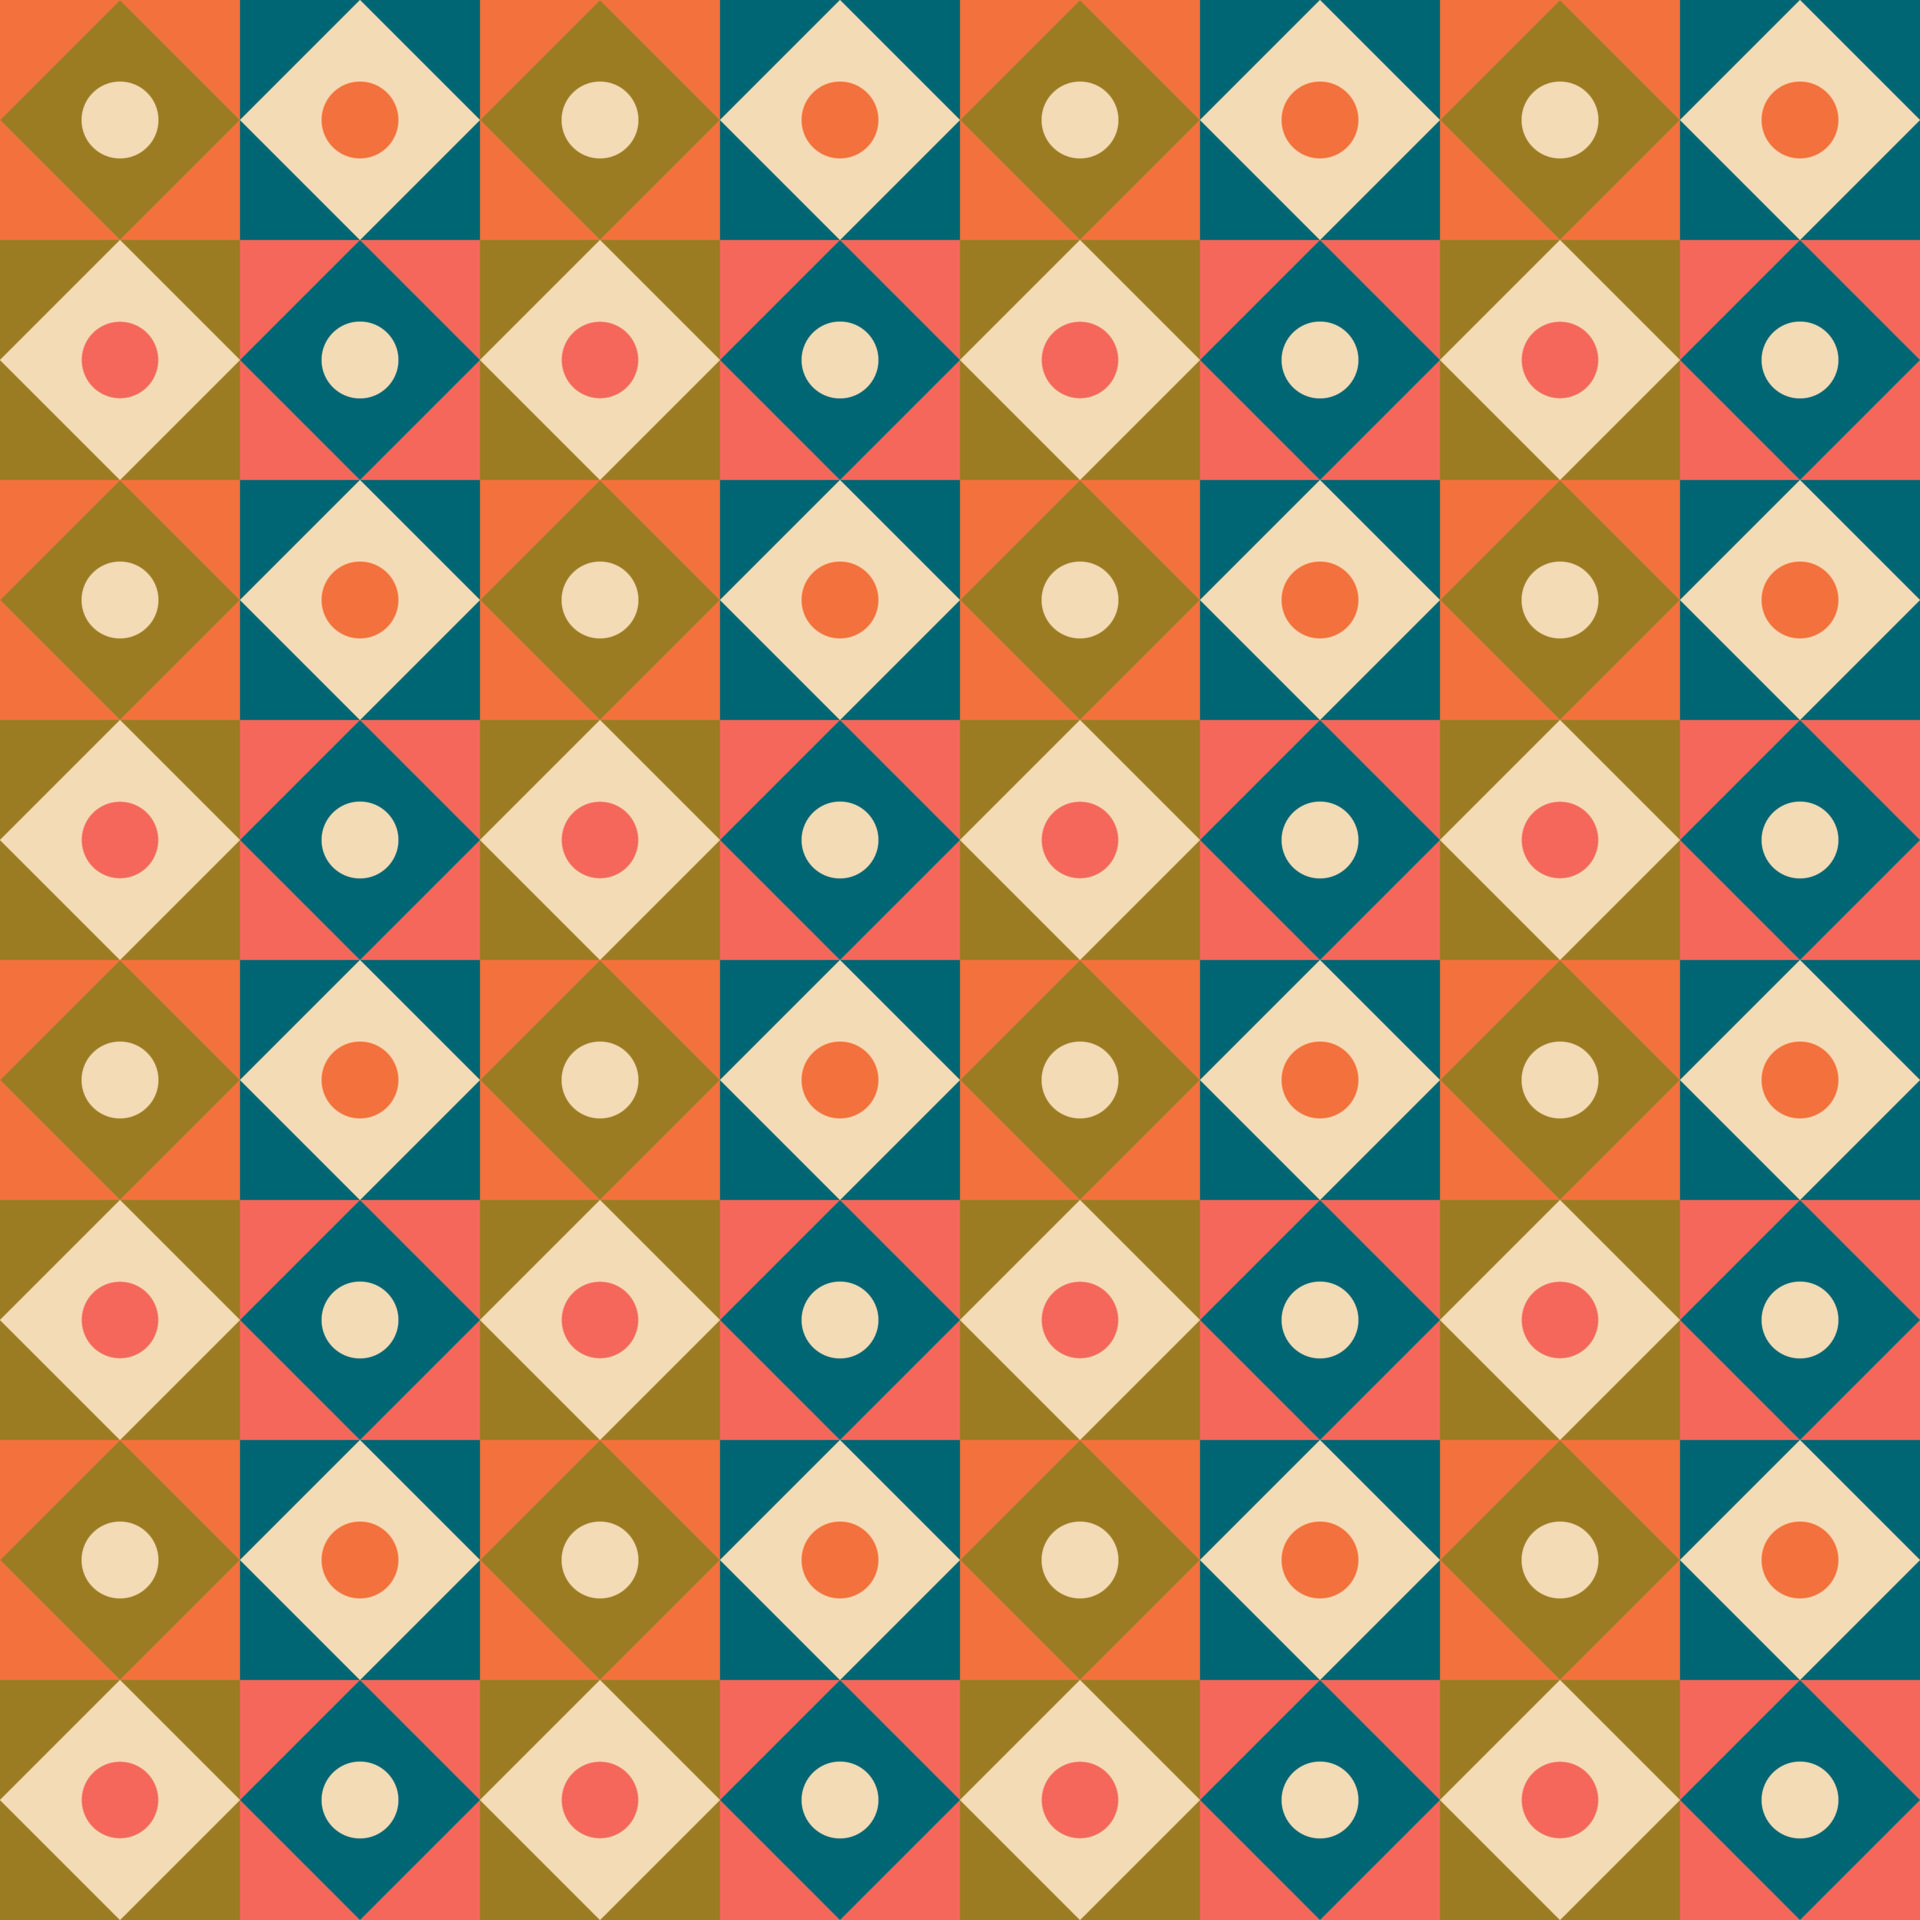 Cùng khám phá những mẫu pattern Mid Century đầy phong cách và ý tưởng sáng tạo! Bạn sẽ không còn lo lắng về việc tìm kiếm những bản thiết kế độc đáo với những mẫu pattern đa dạng và in ấn dễ dàng của chúng tôi.